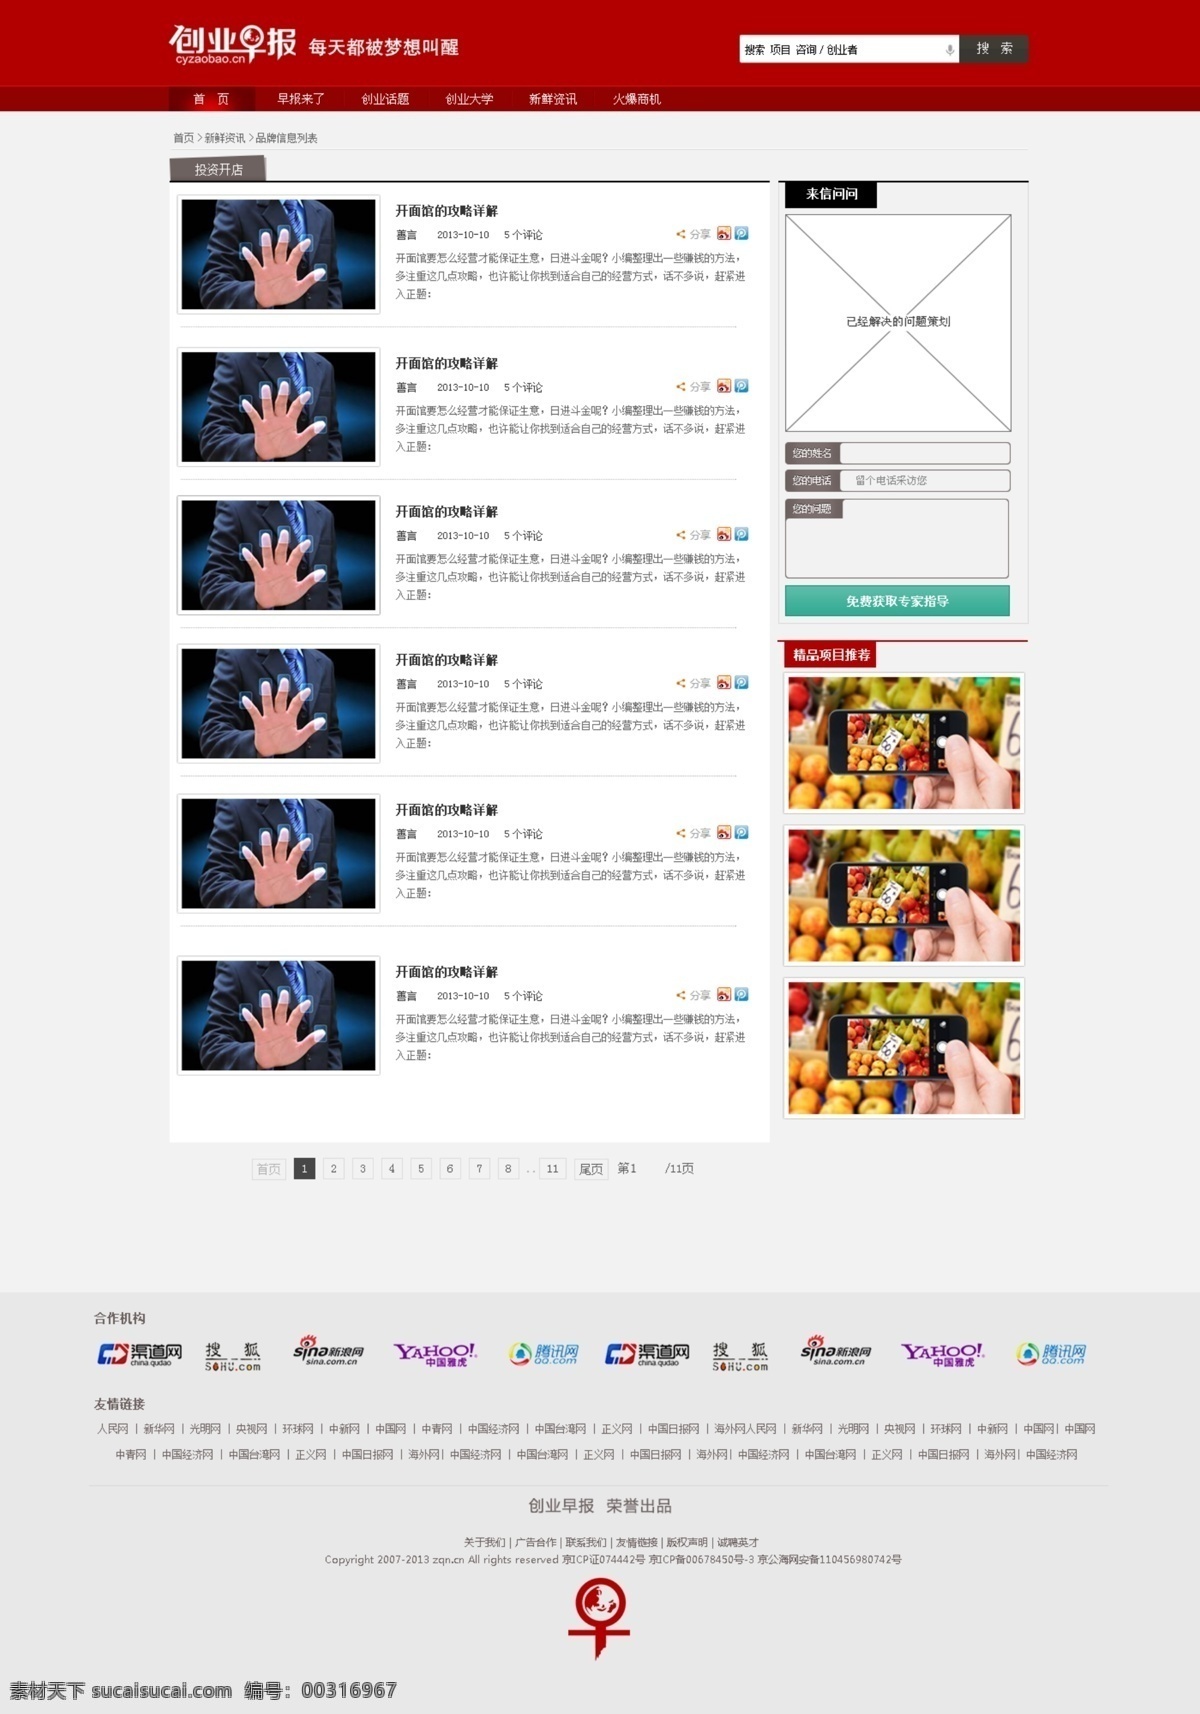 网页设计 列表页 专题 大图 项目 创业项目 创业 web 界面设计 中文模板 白色